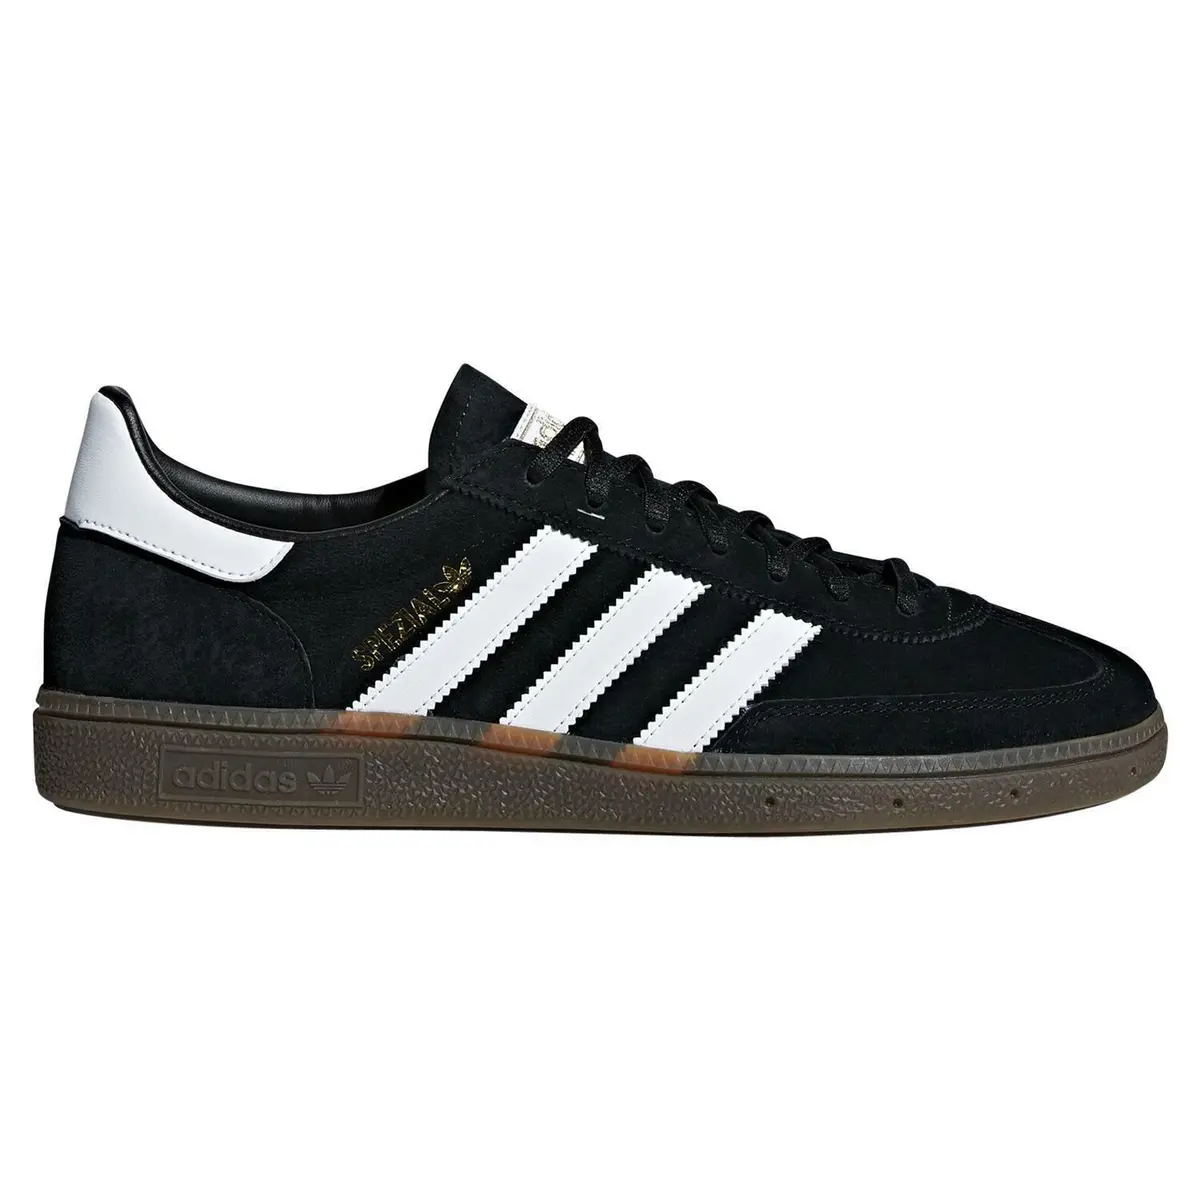 Adidas Original Handball Spezial Trainer Shoes | eBay